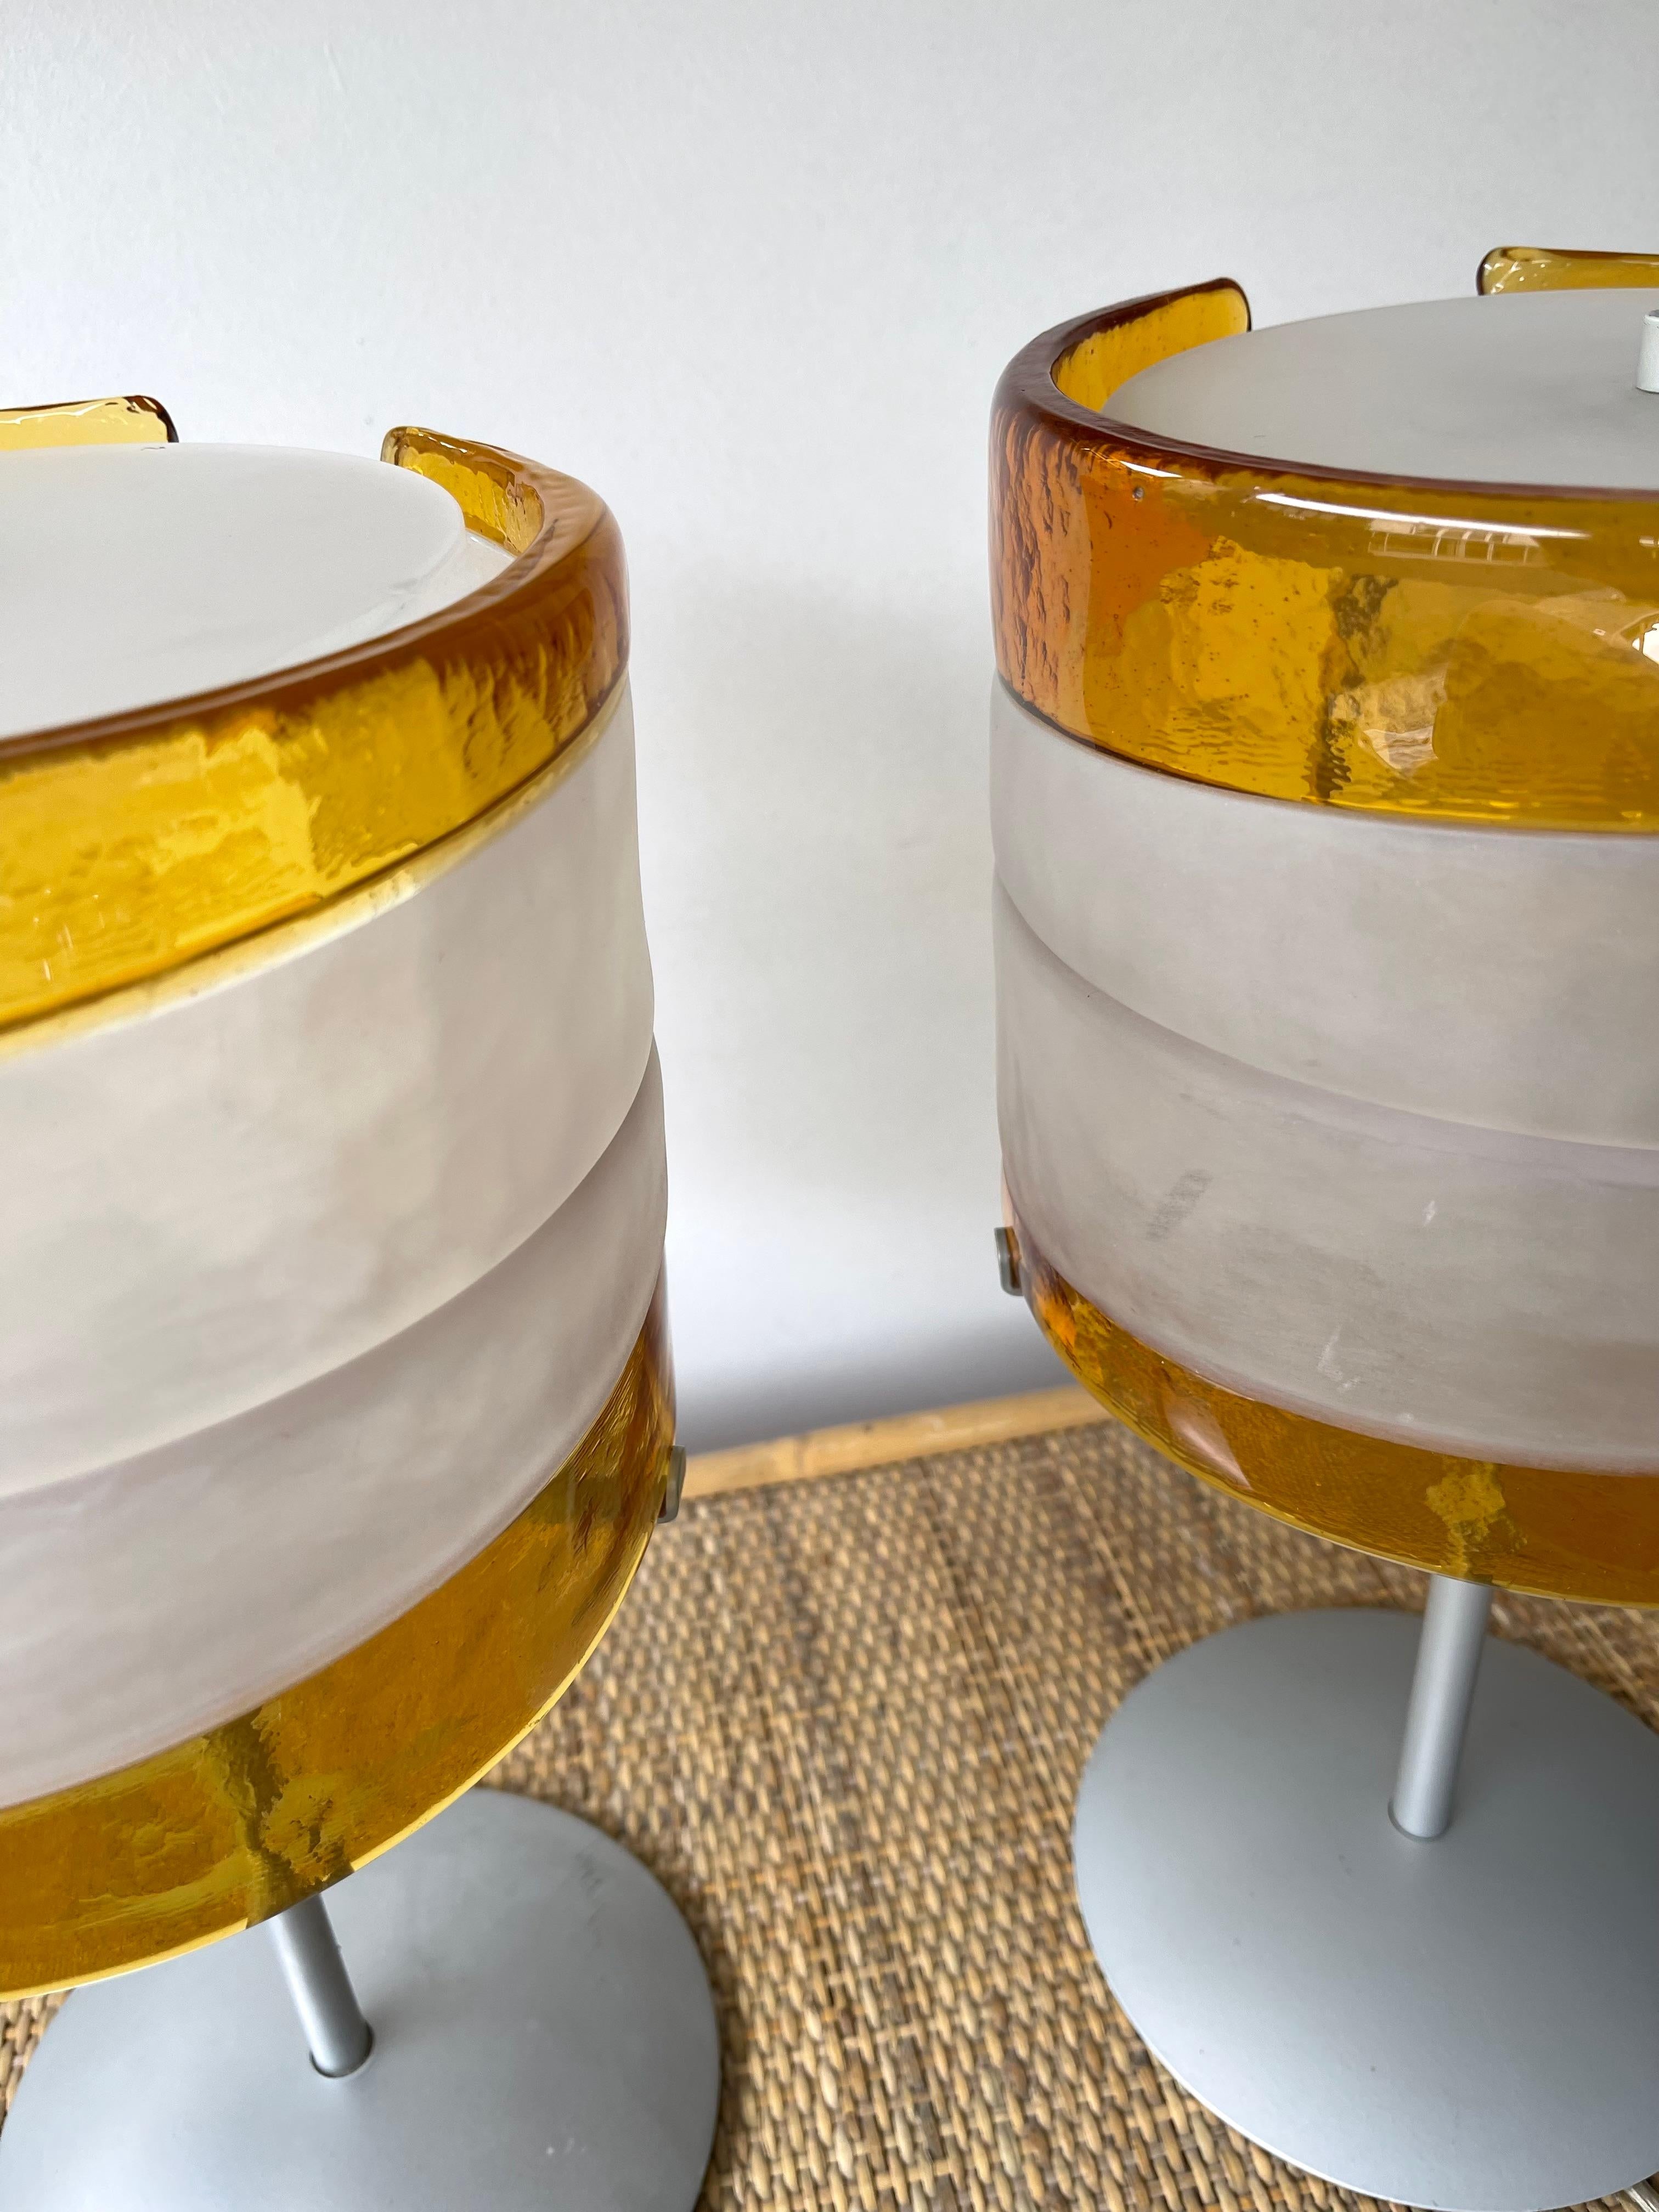 Paire de lampes de chevet ou de lampes en verre soufflé de Murano, datant du milieu du siècle dernier et de l'ère spatiale. Travail artisanal de conception italienne par la manufacture Mazzega. Timbre original de Mazzega. Des fabricants célèbres